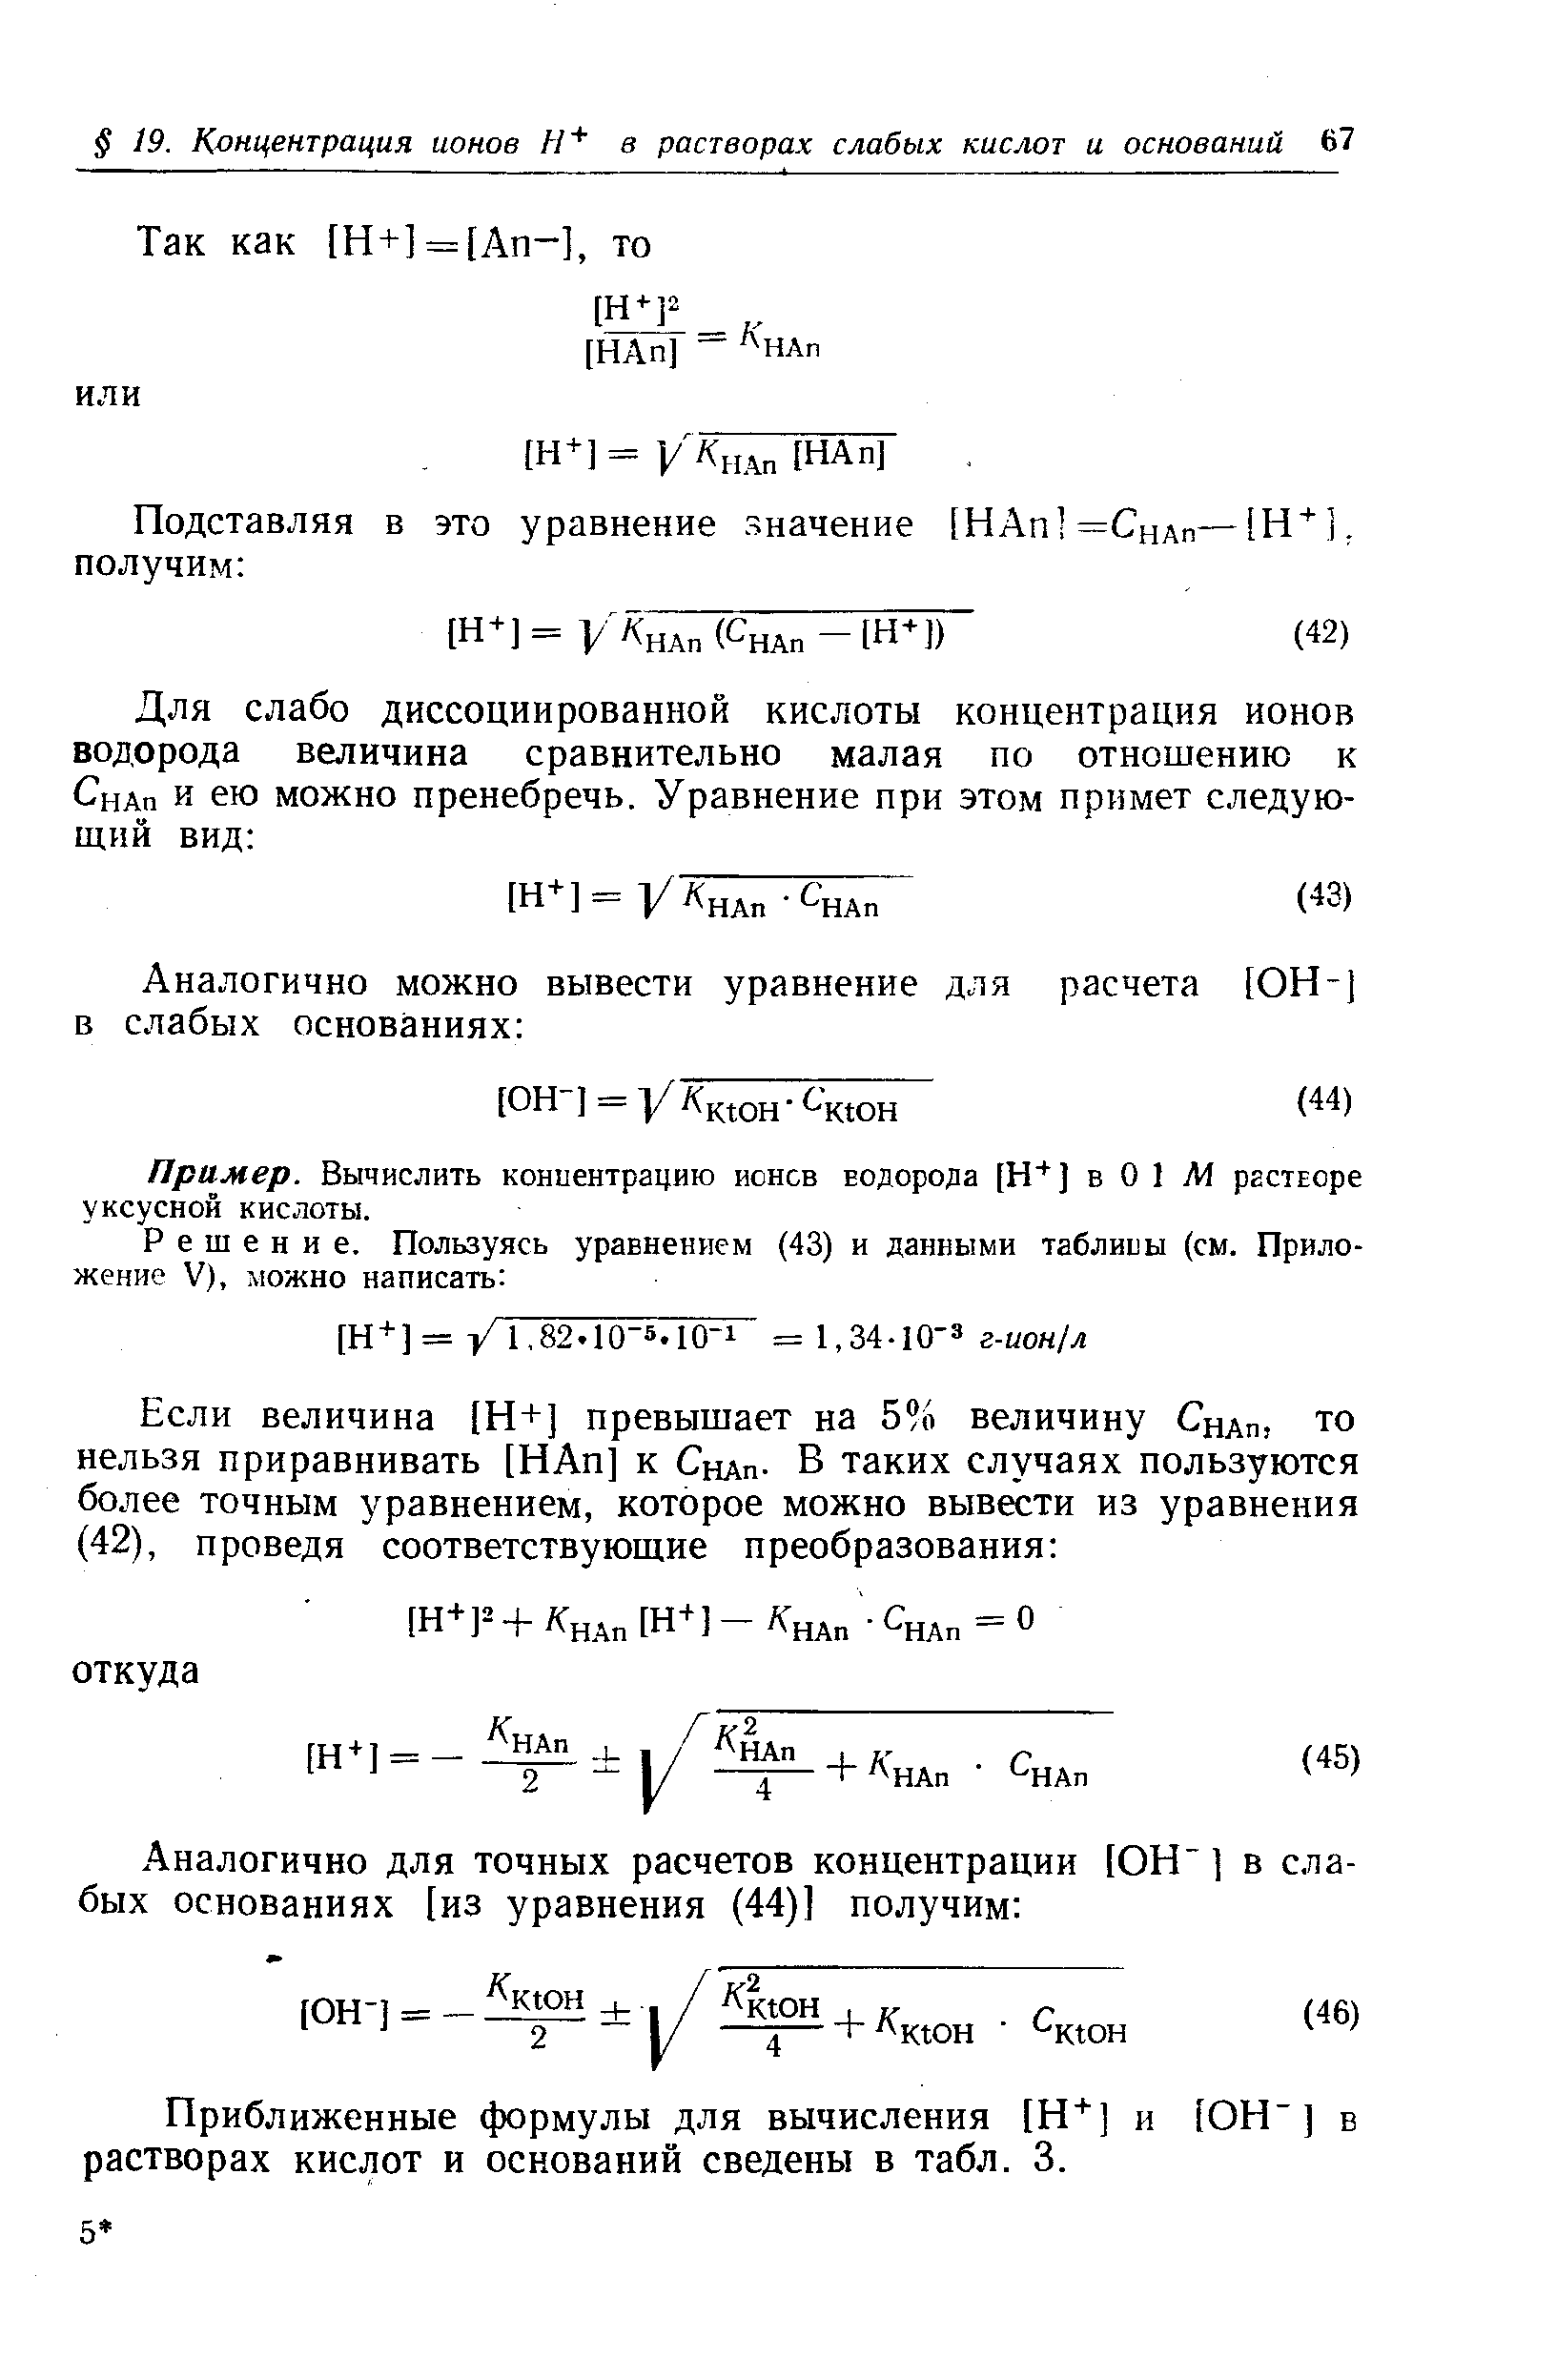 Приближенные формулы для вычисления [Н ] и [ОН-] в растворах кислот и оснований сведены в табл. 3.